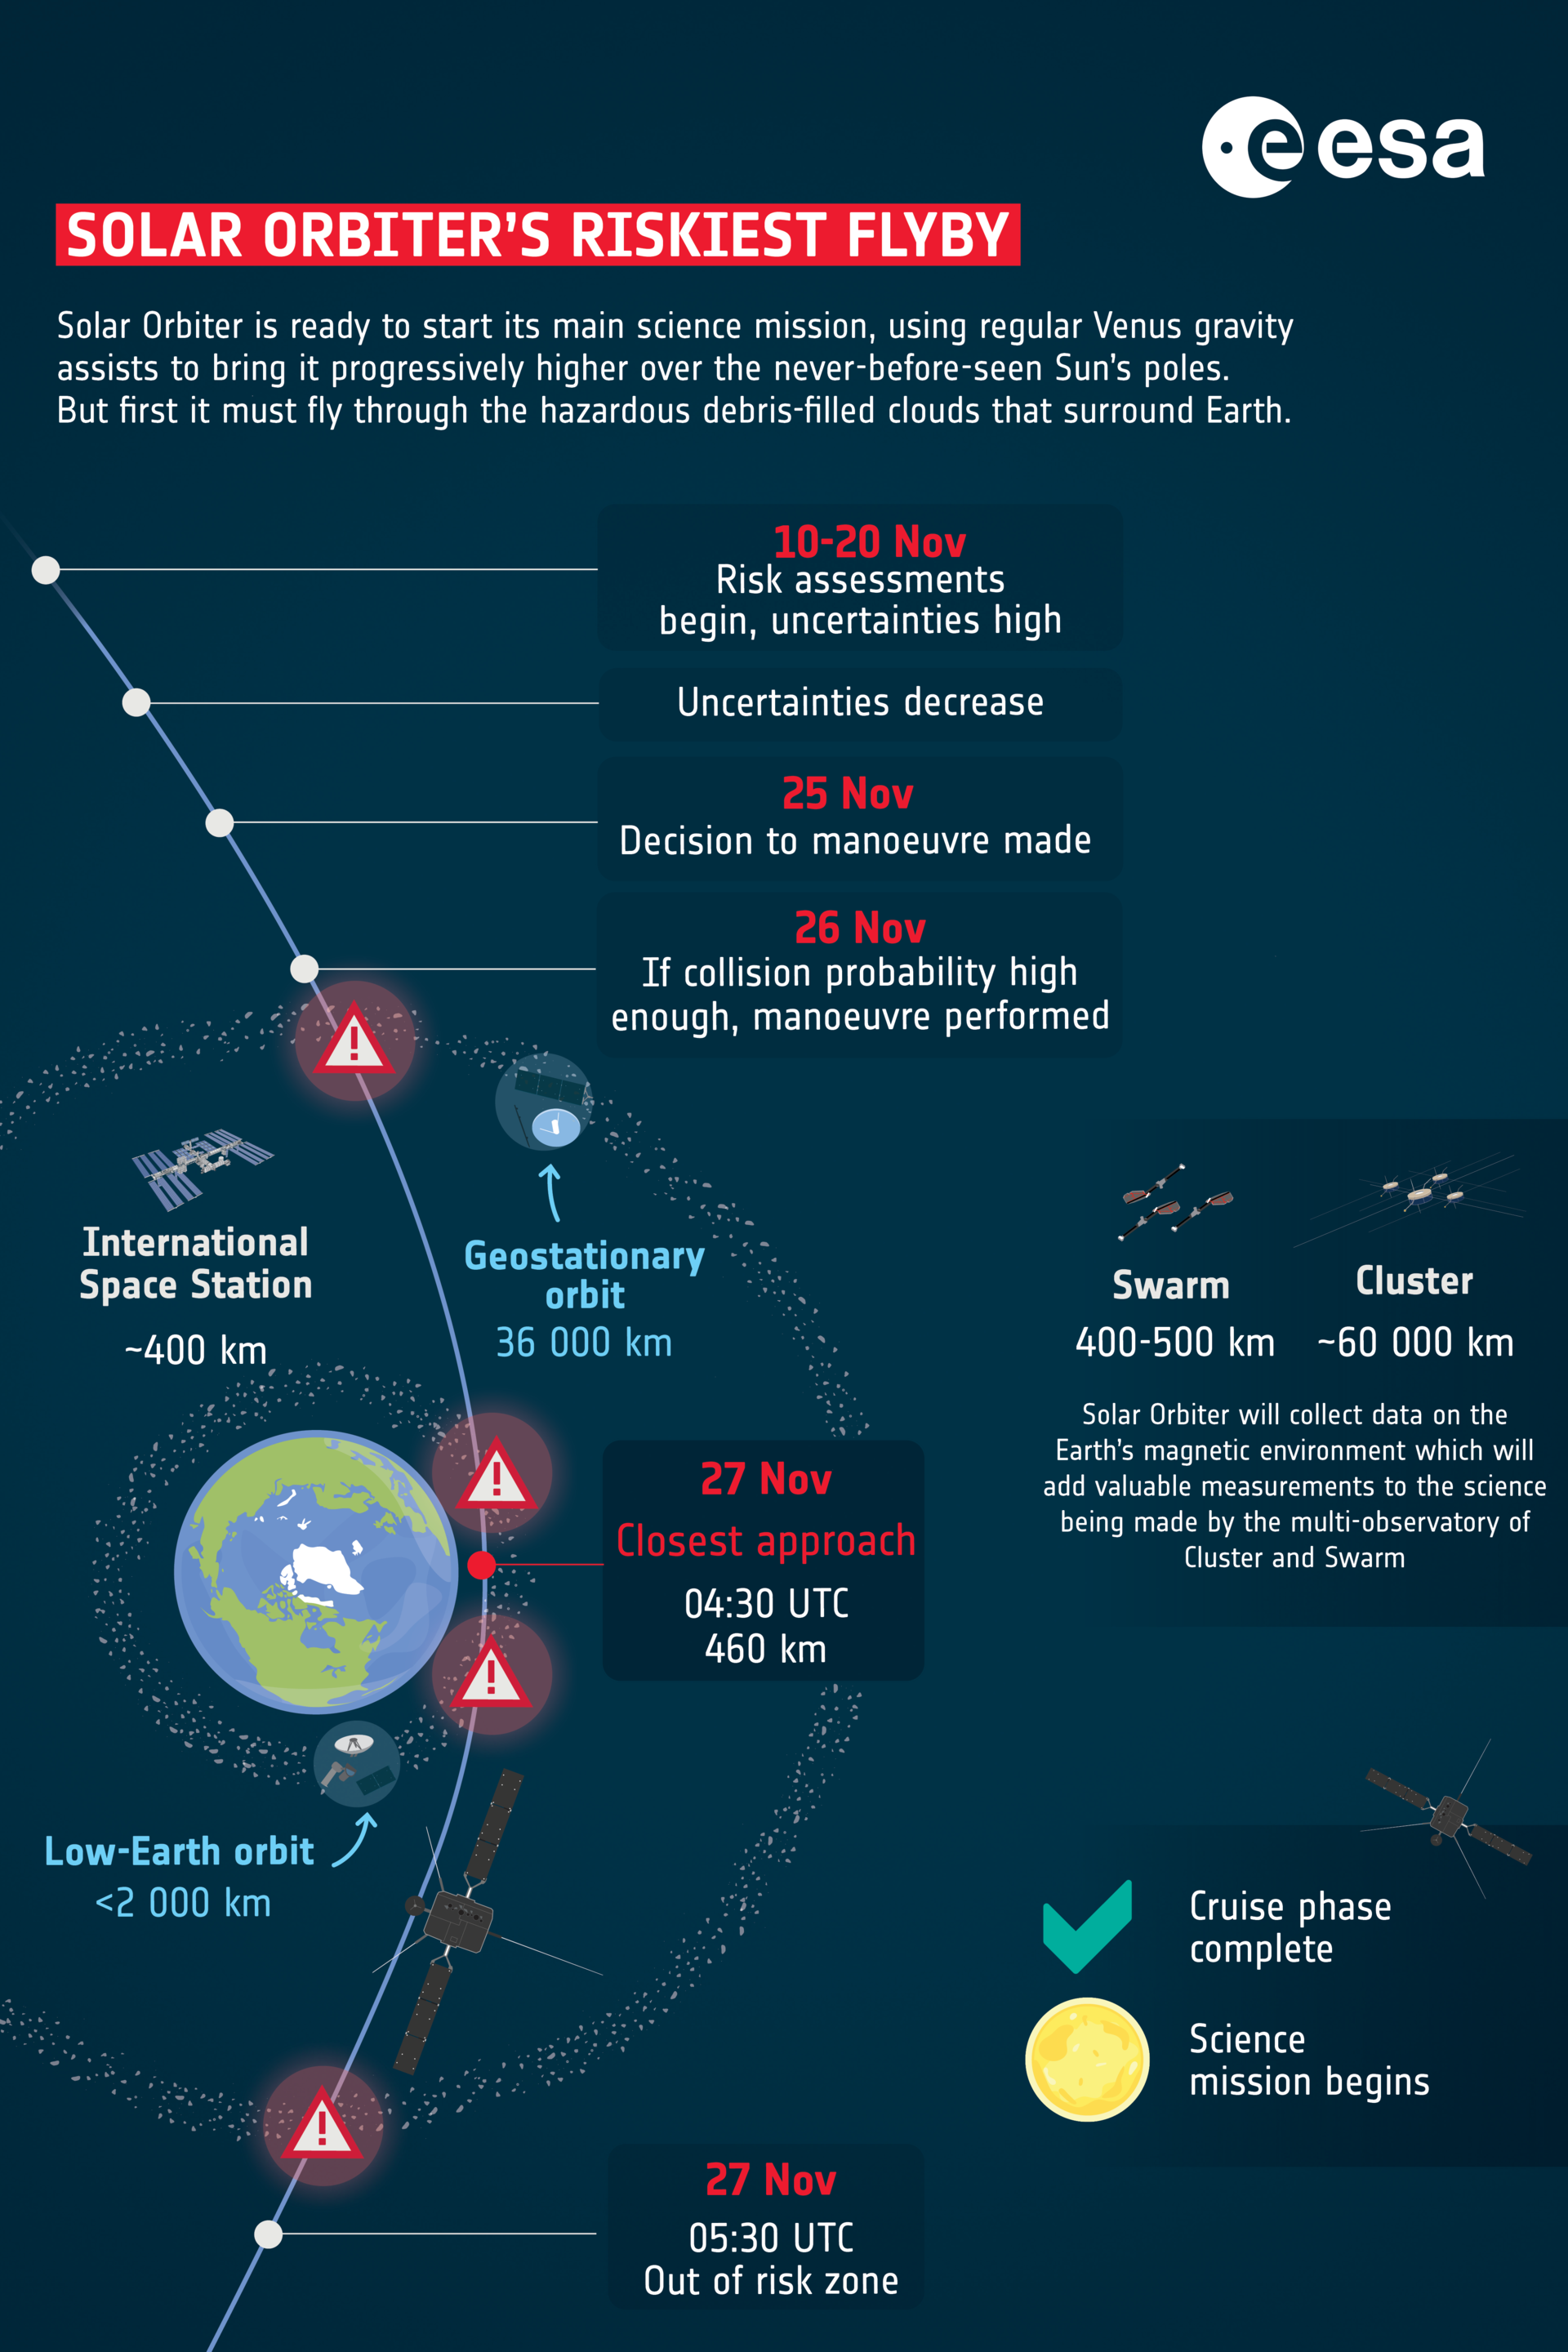 ESA - Solar Orbiter's riskiest flyby